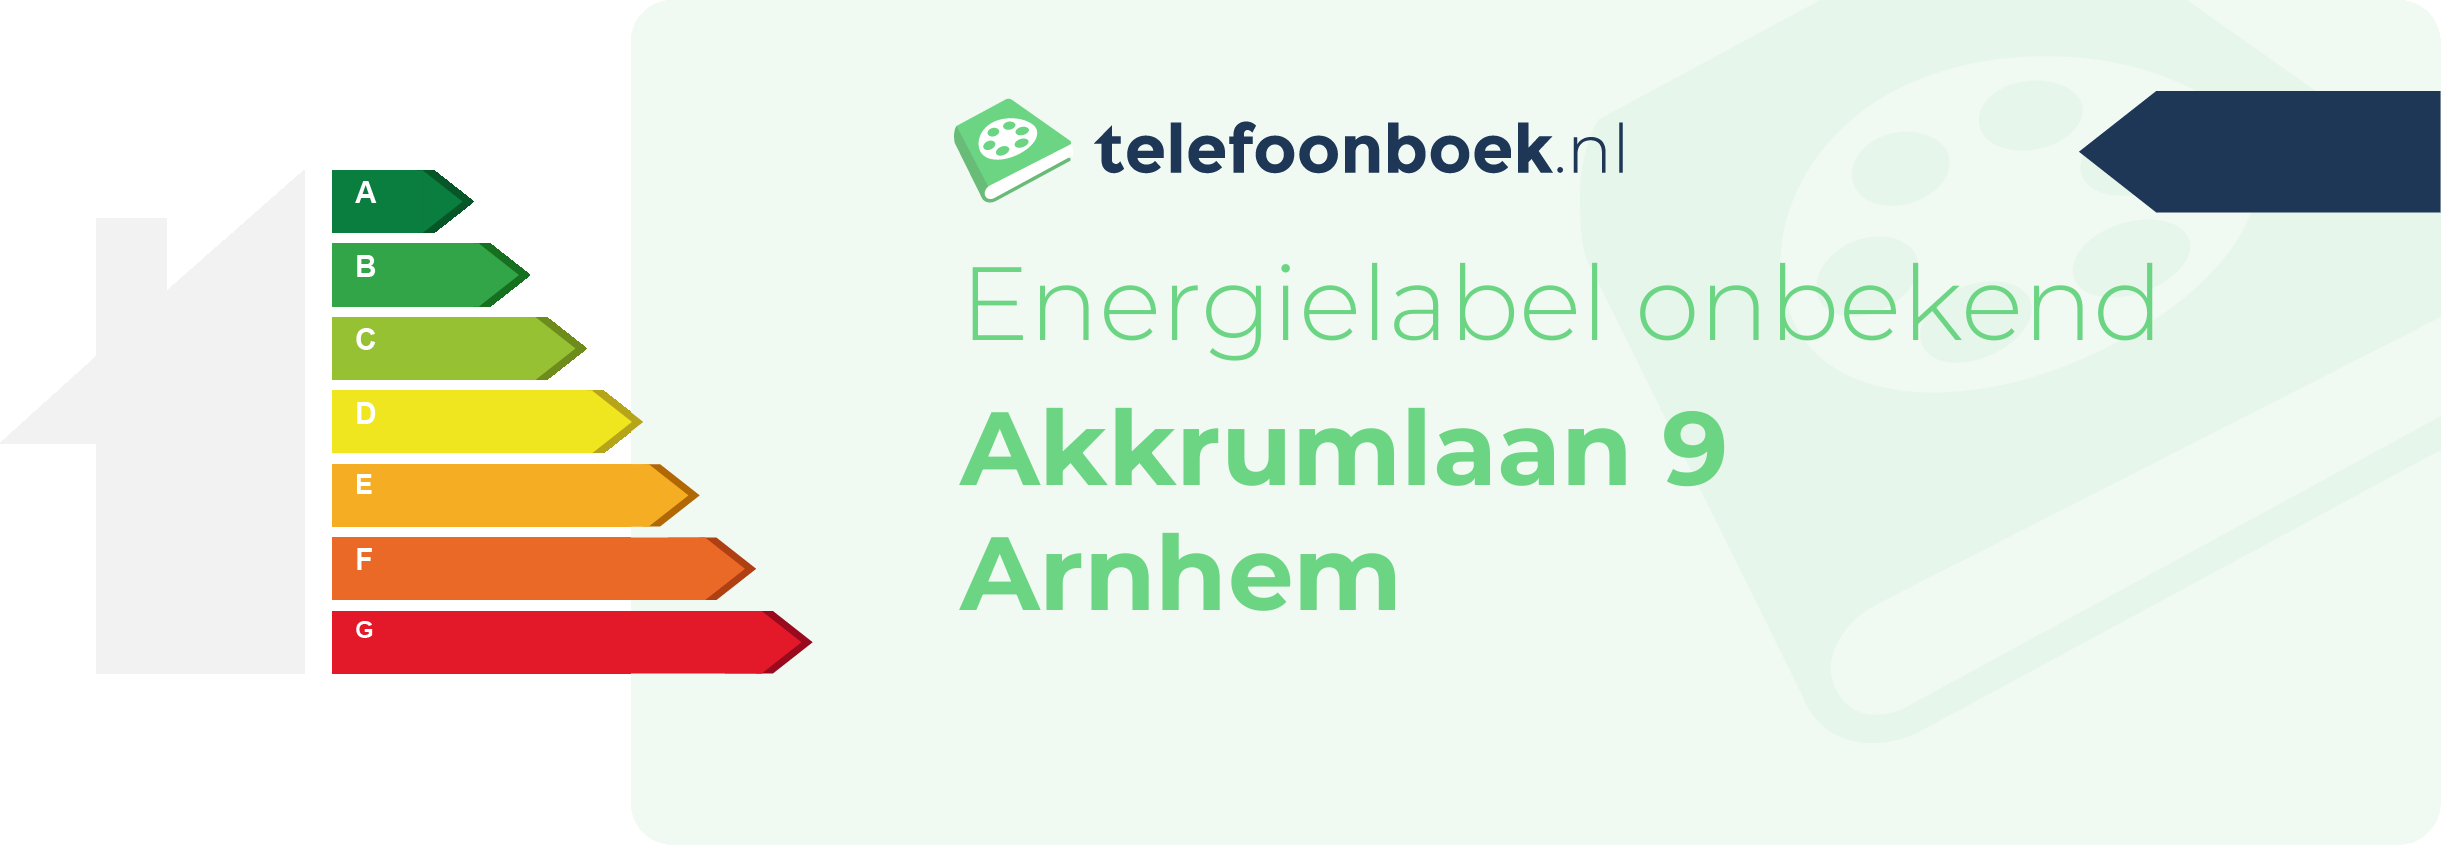 Energielabel Akkrumlaan 9 Arnhem